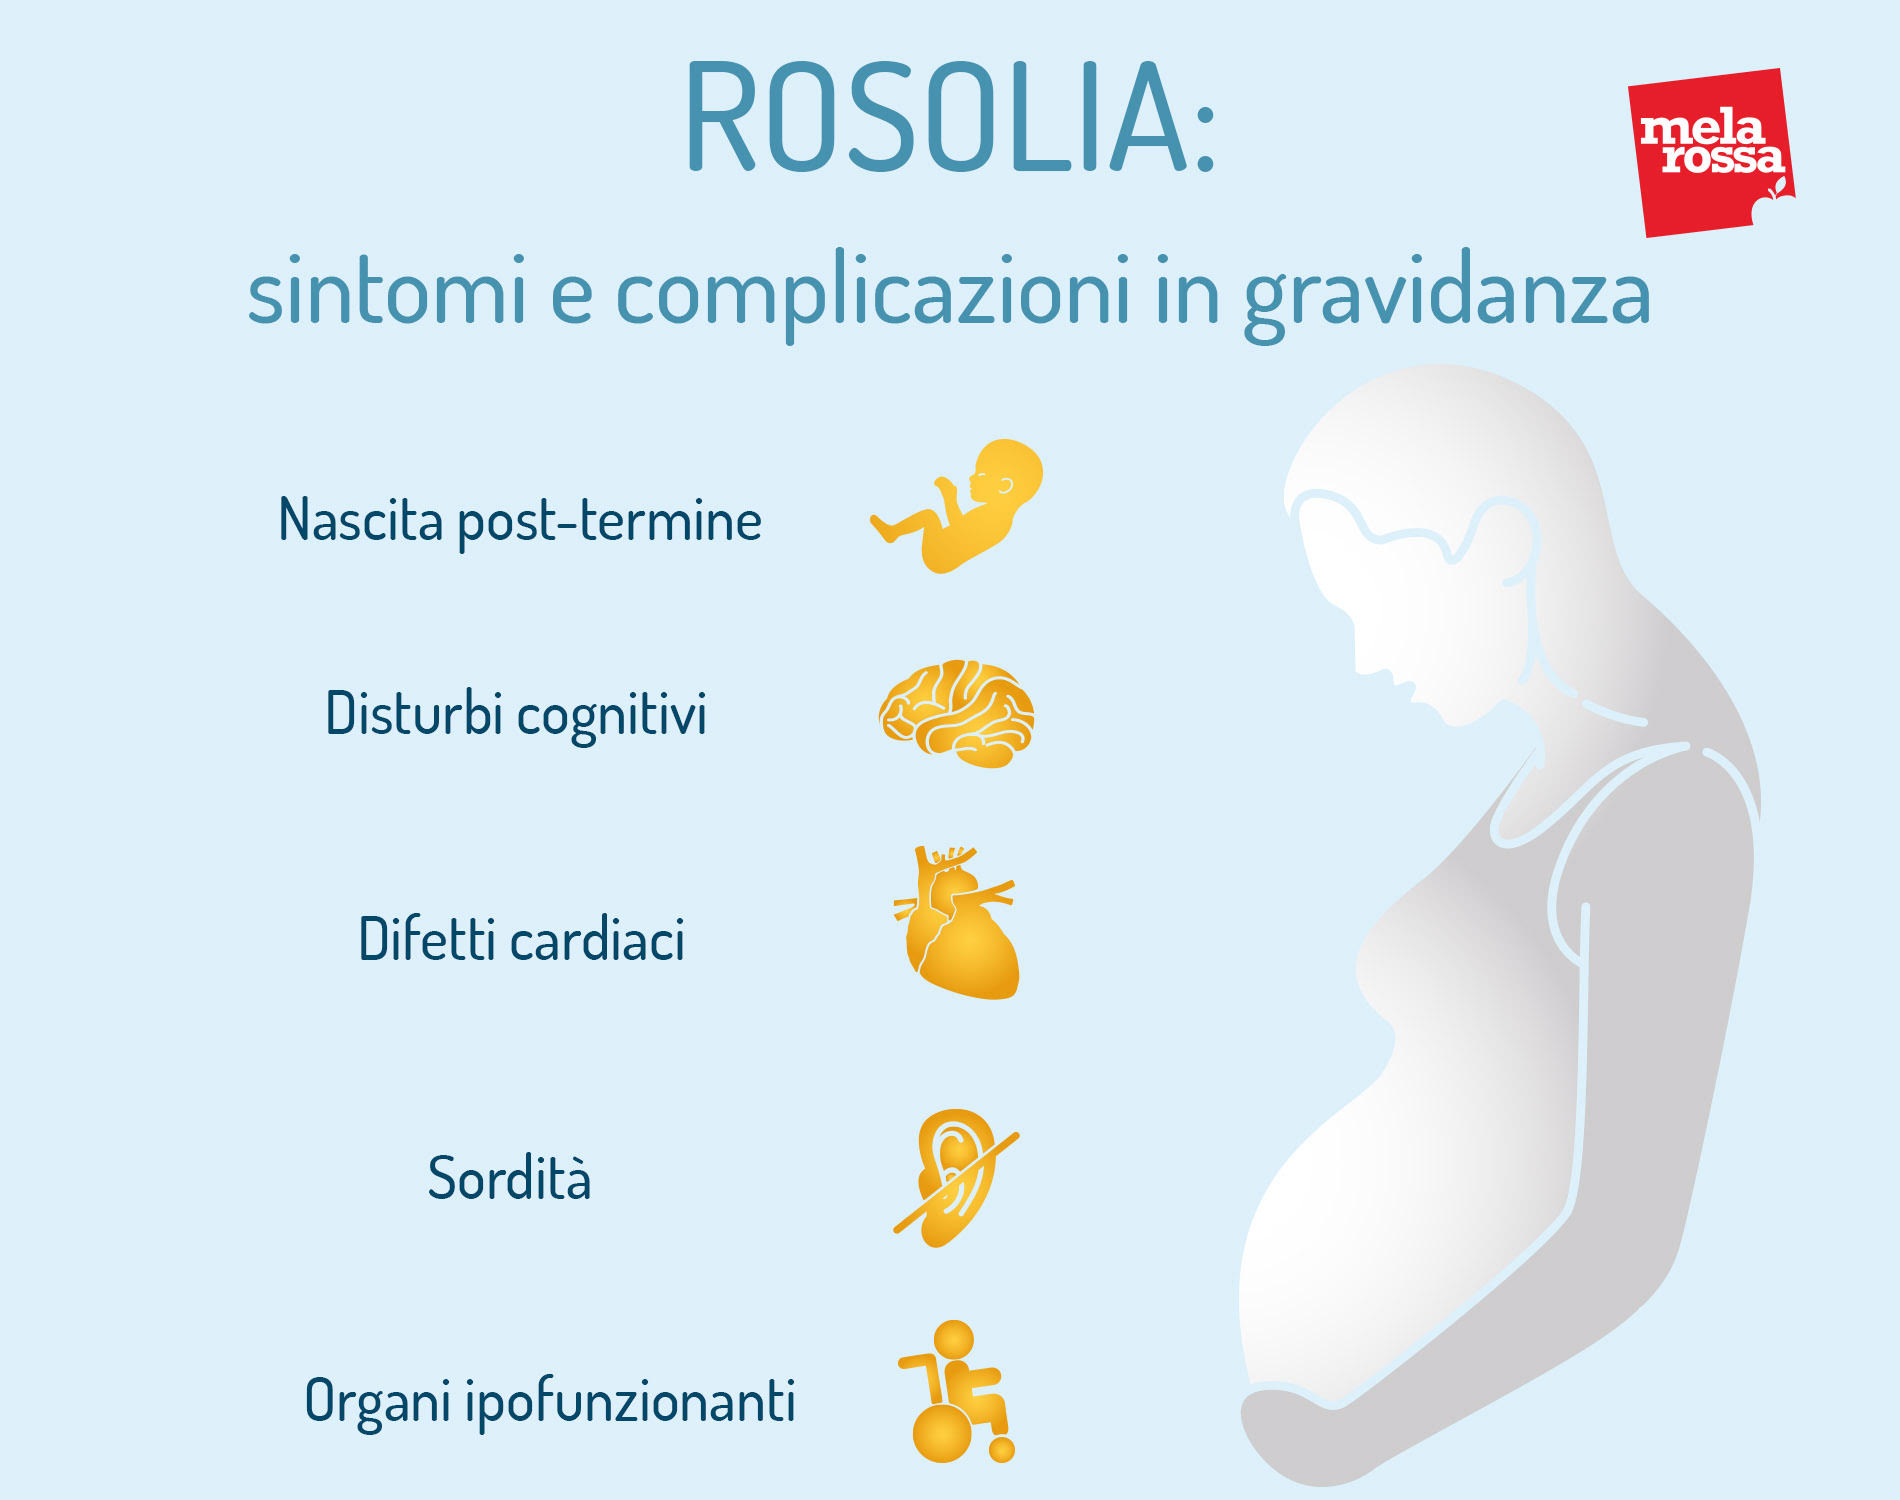 rosolia in gravidanza: sintomi e complicazioni